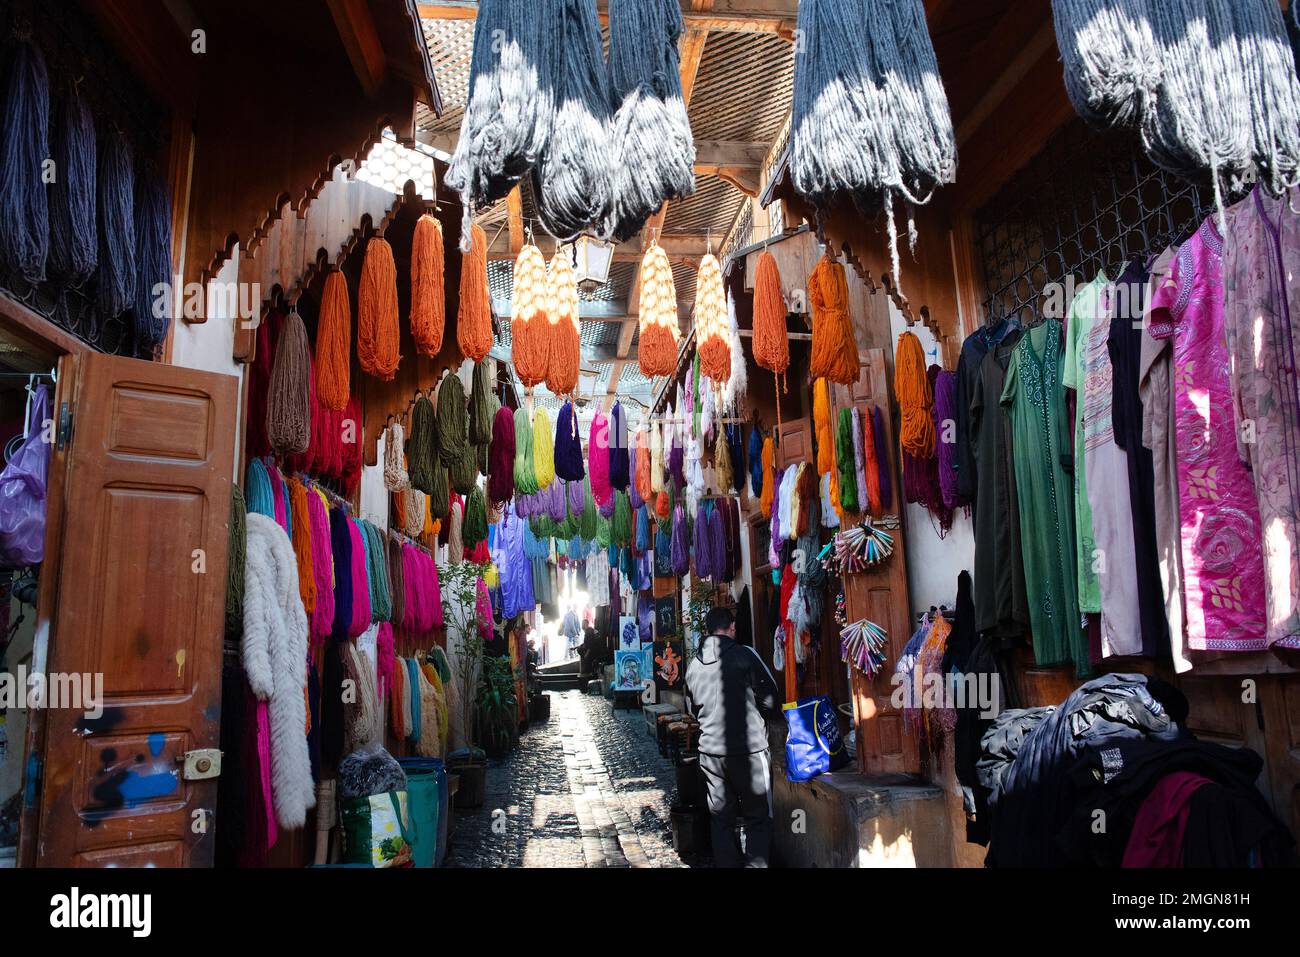 FES la vieille ville impériale du Maroc, la Médina la plus grande zone piétonne du monde, a diverses zones artisanales, ici la laine mourant accrochée à la vente Banque D'Images